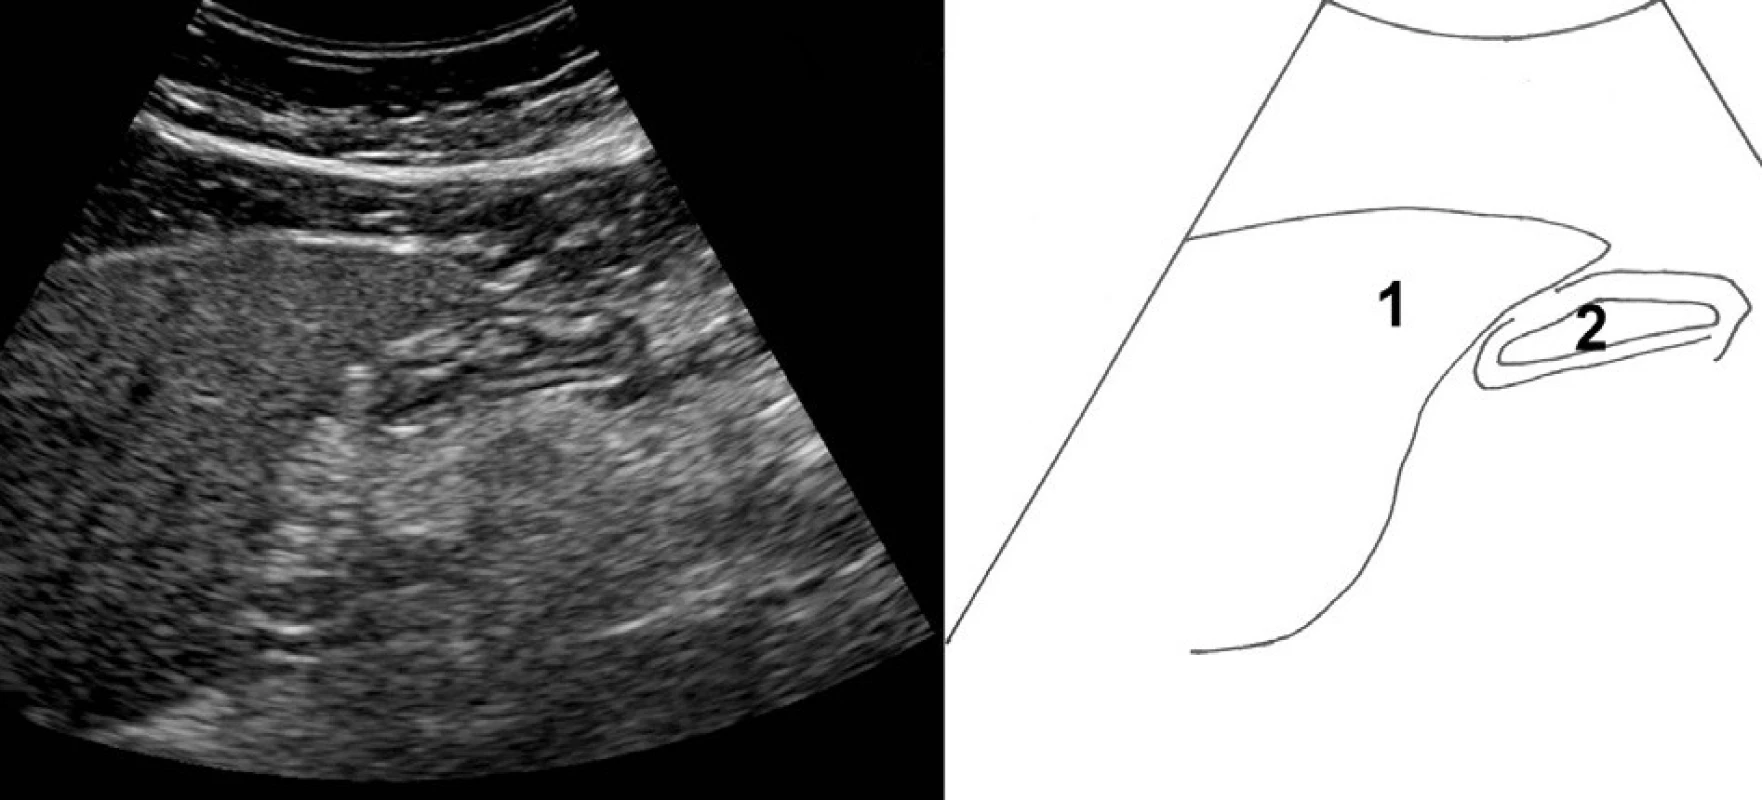 Příčný řez epigastriem mírně vlevo od střední čáry. 1 – levý lalok jater, 2 – žaludek